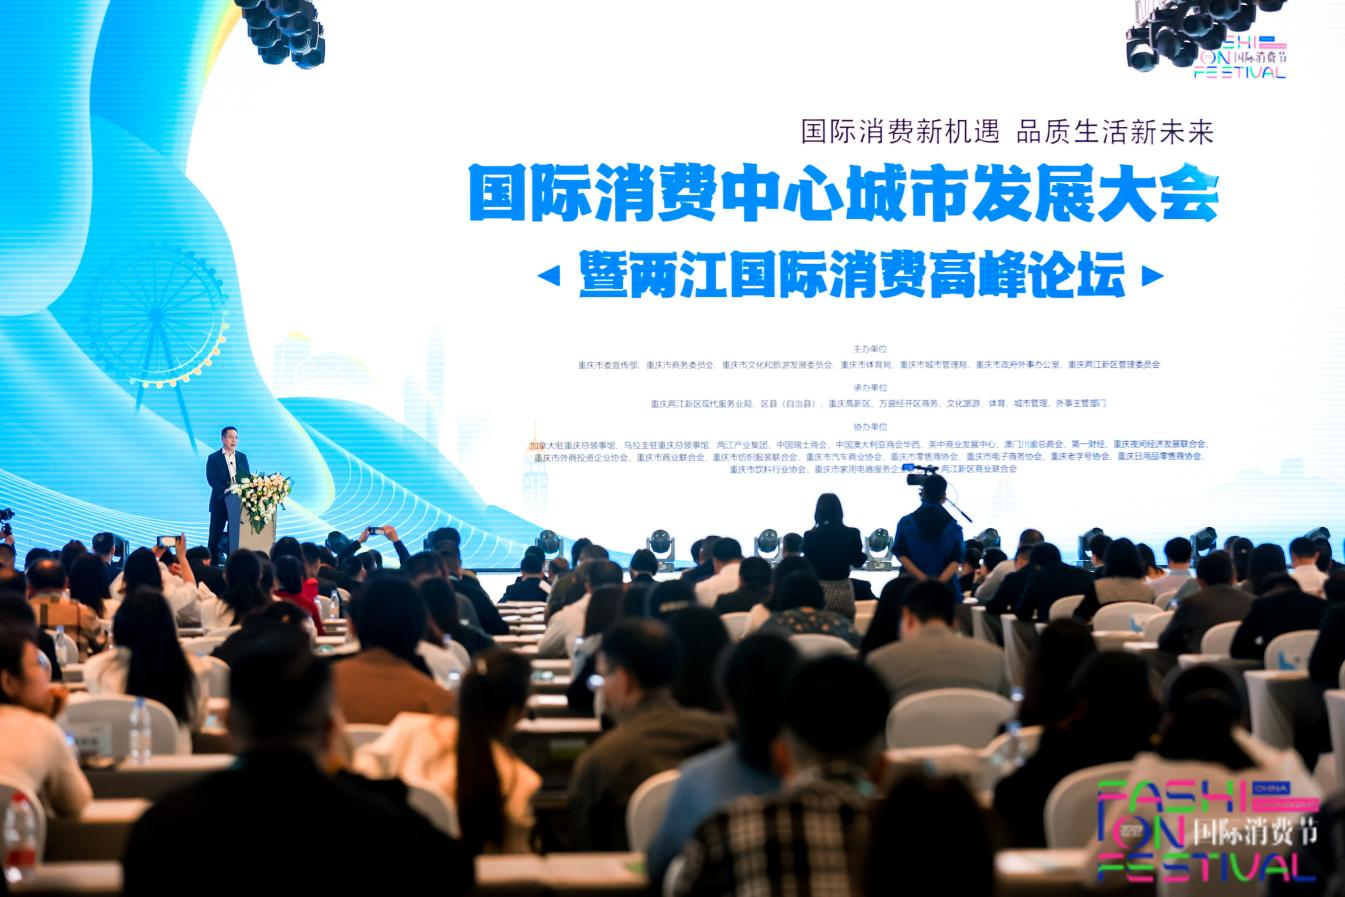 國際消費中心城市發展大會暨兩江國際消費高峰論壇在兩江新區舉行